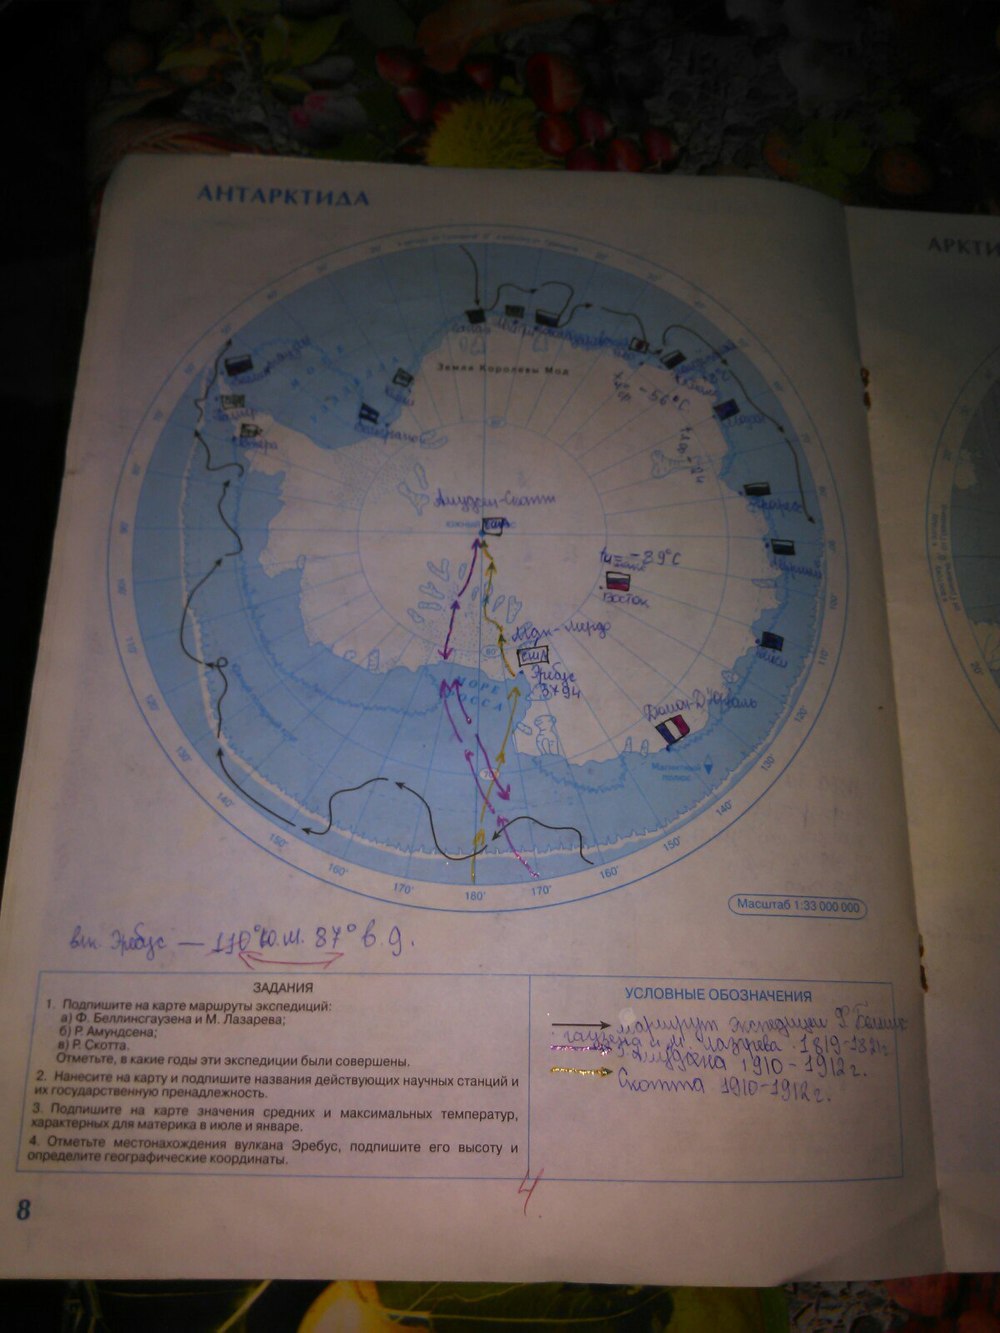 География страница 91. Карта по географии 7 класс Антарктида. Контурная карта по географии 7 класс Антарктида. Антарктида на карте 7 класс география. География 7 класс контурные карты Антарктида.